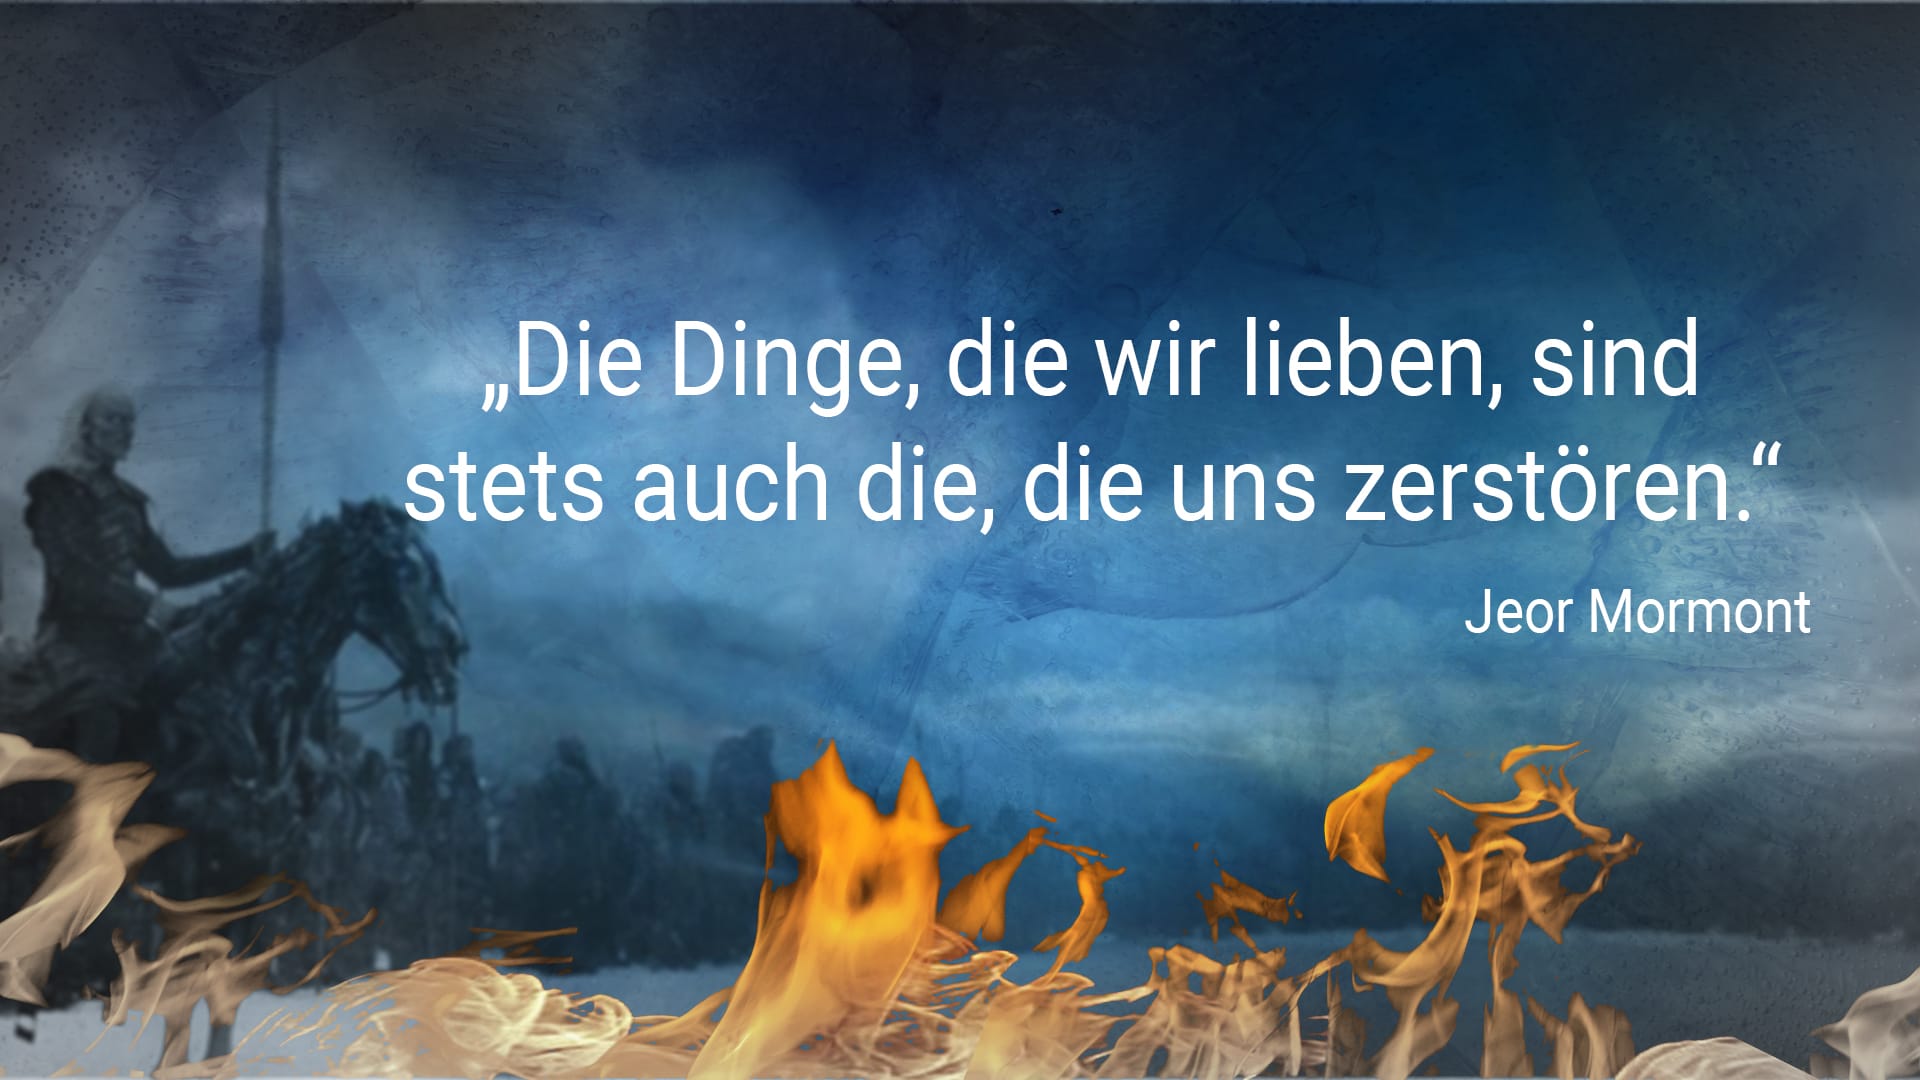 Game of Thrones: "Die Dinge, die wir lieben, sind stets auch die, die uns zerstören." - Jeor Mormont